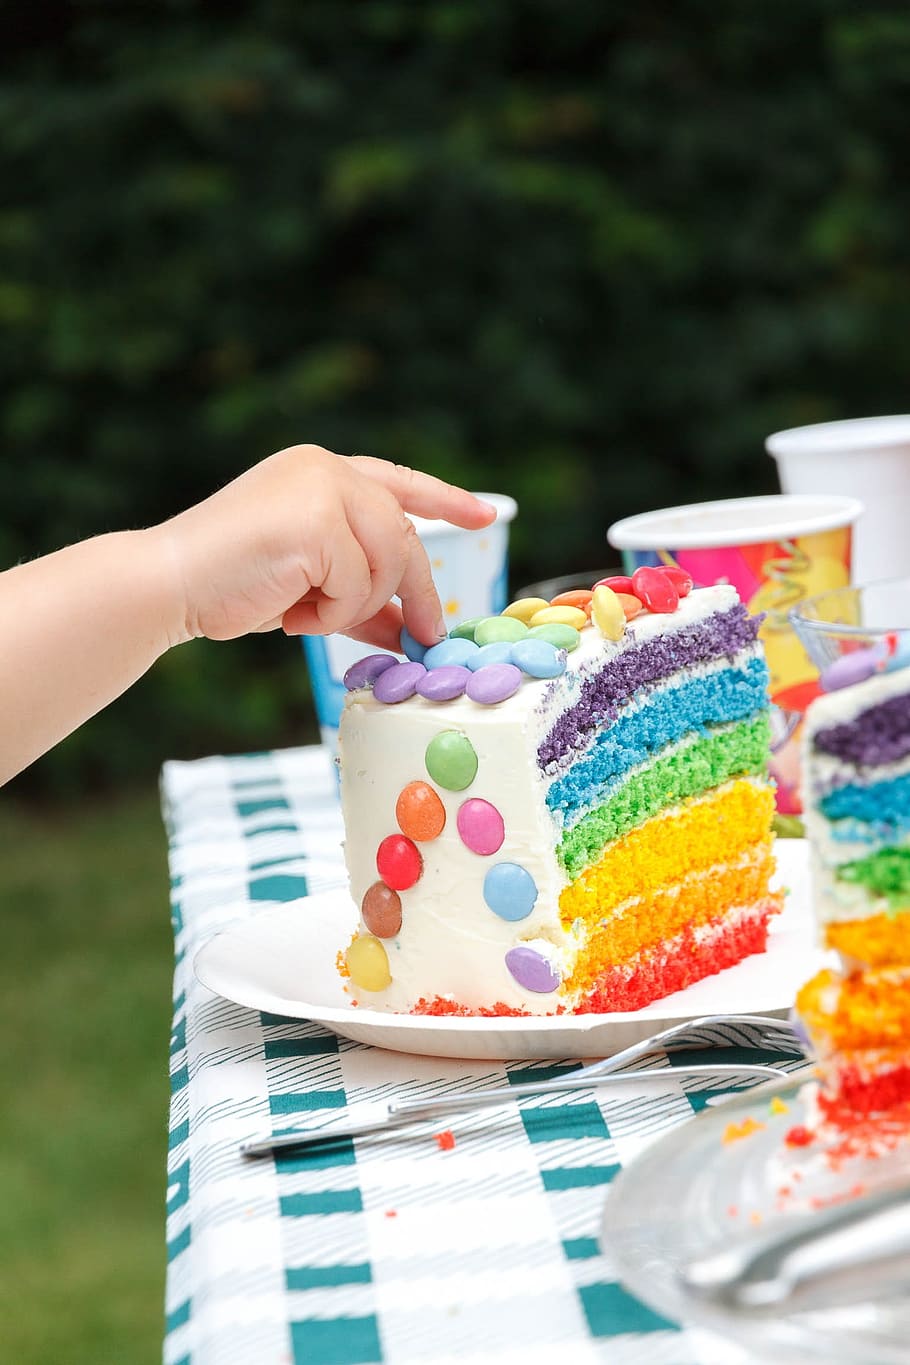 kue pelangi, ulang tahun, kue, manis, perayaan, kue ulang tahun, lilin, ulang tahun anak-anak, lezat, merah